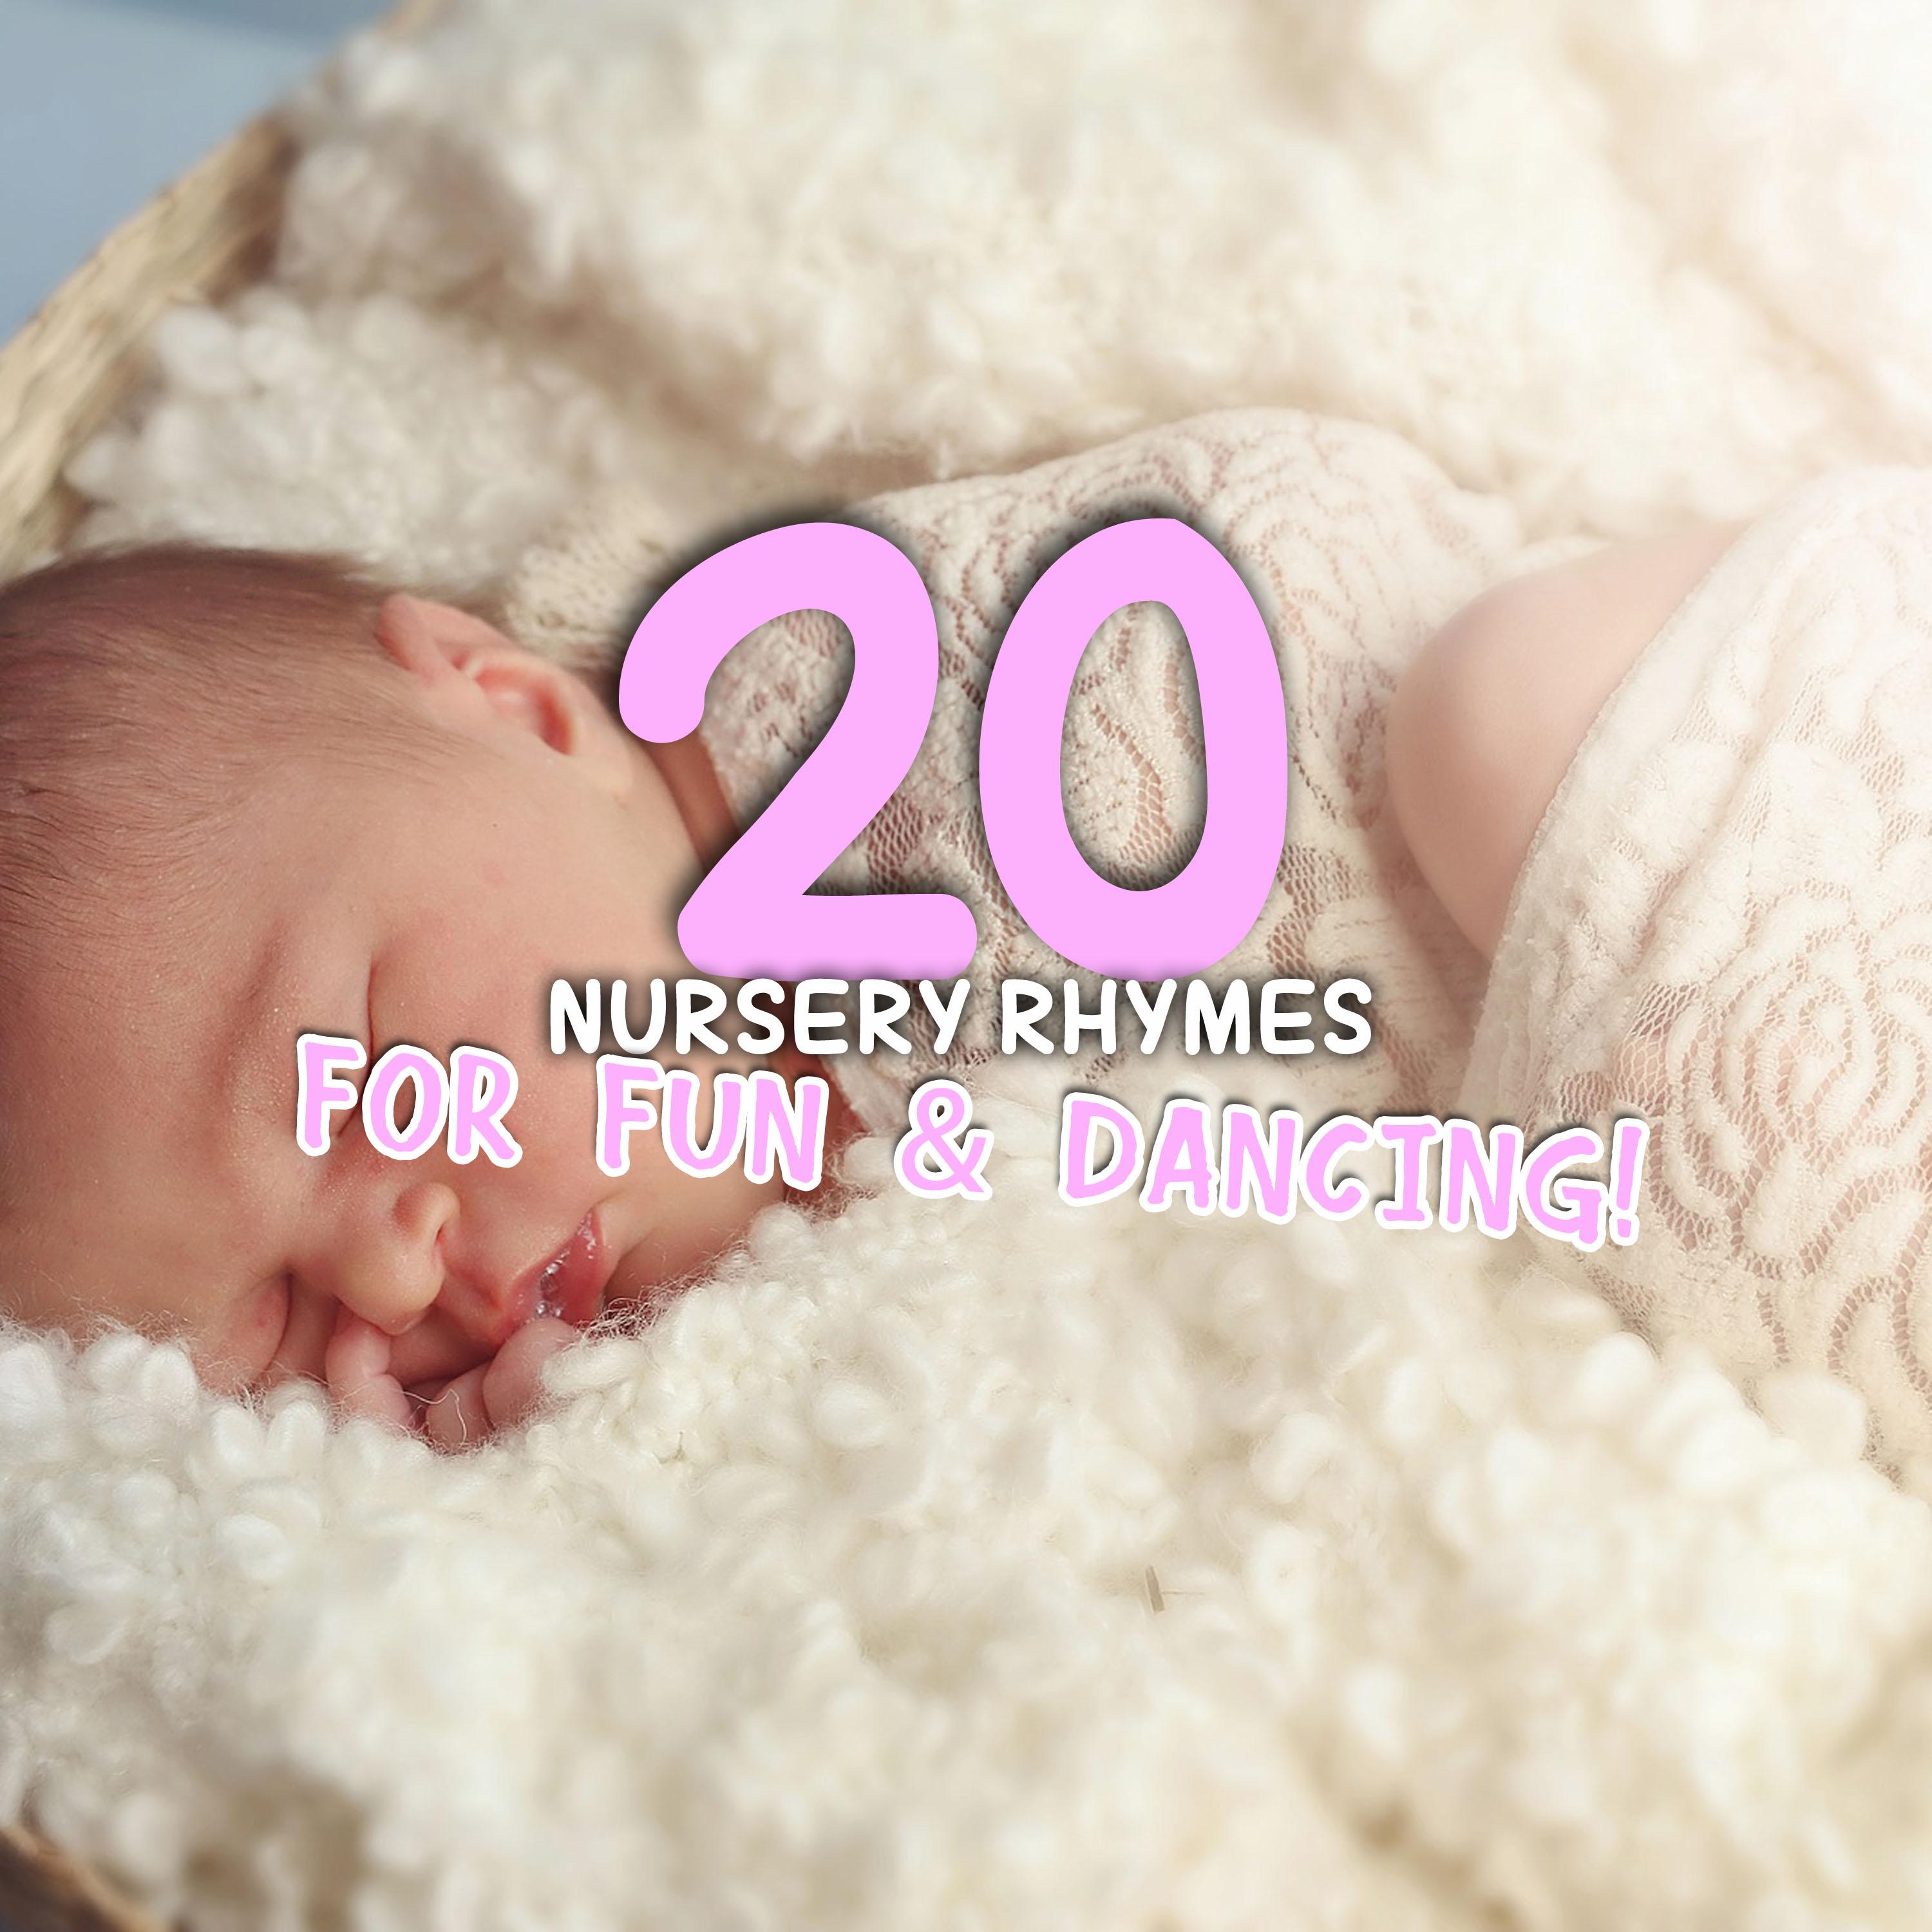 12 Gentle Nursery Rhymes for Sleeping